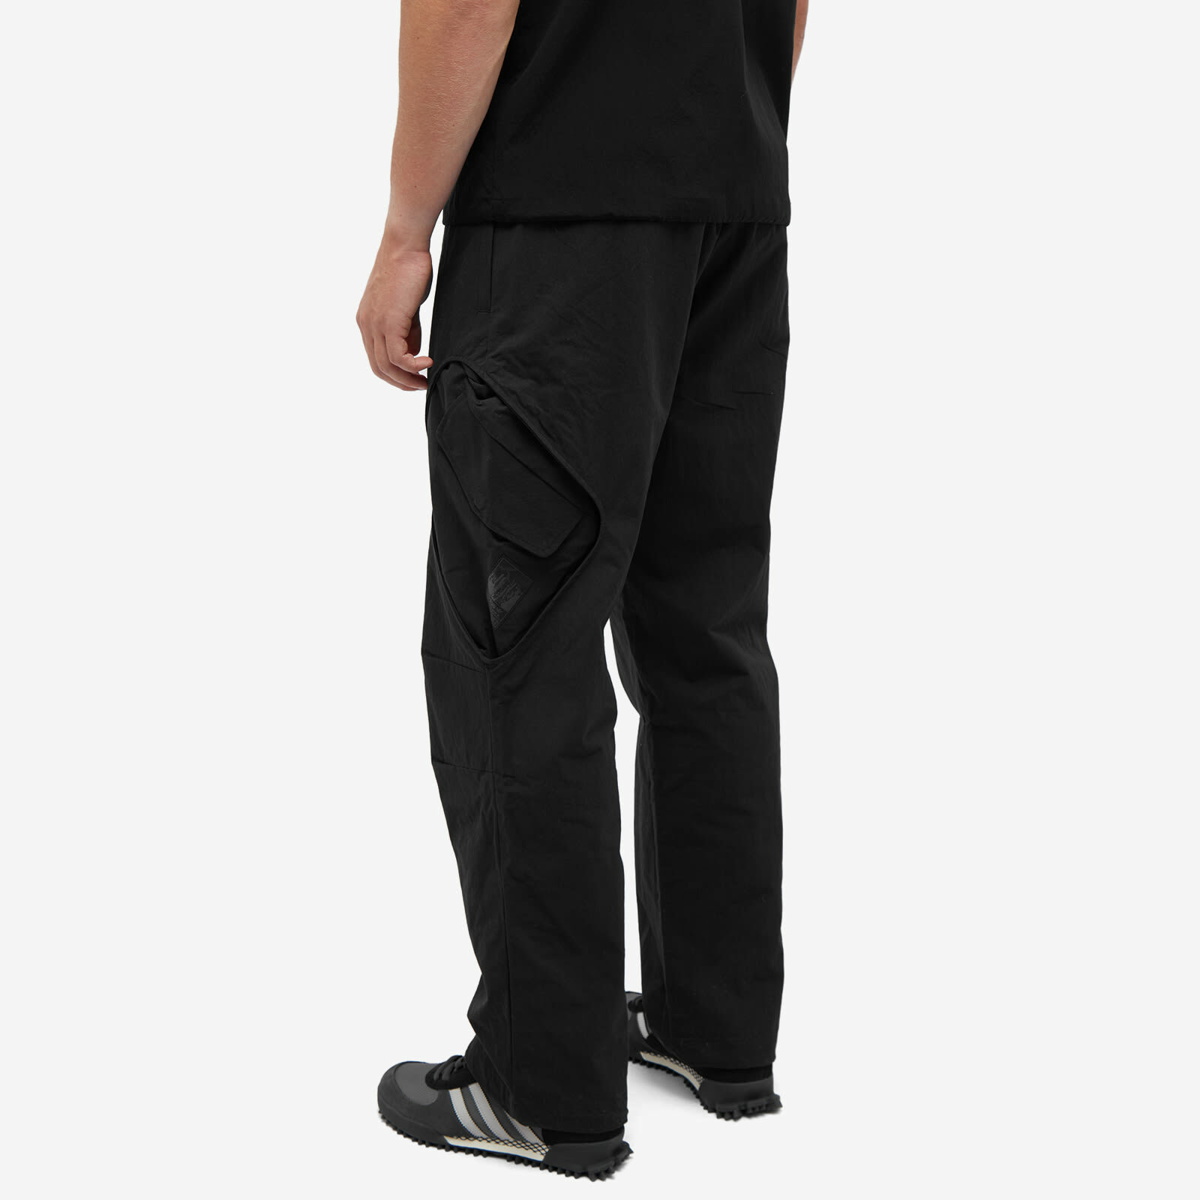 Adidas Men's Adventure Premium Pant in Black adidas